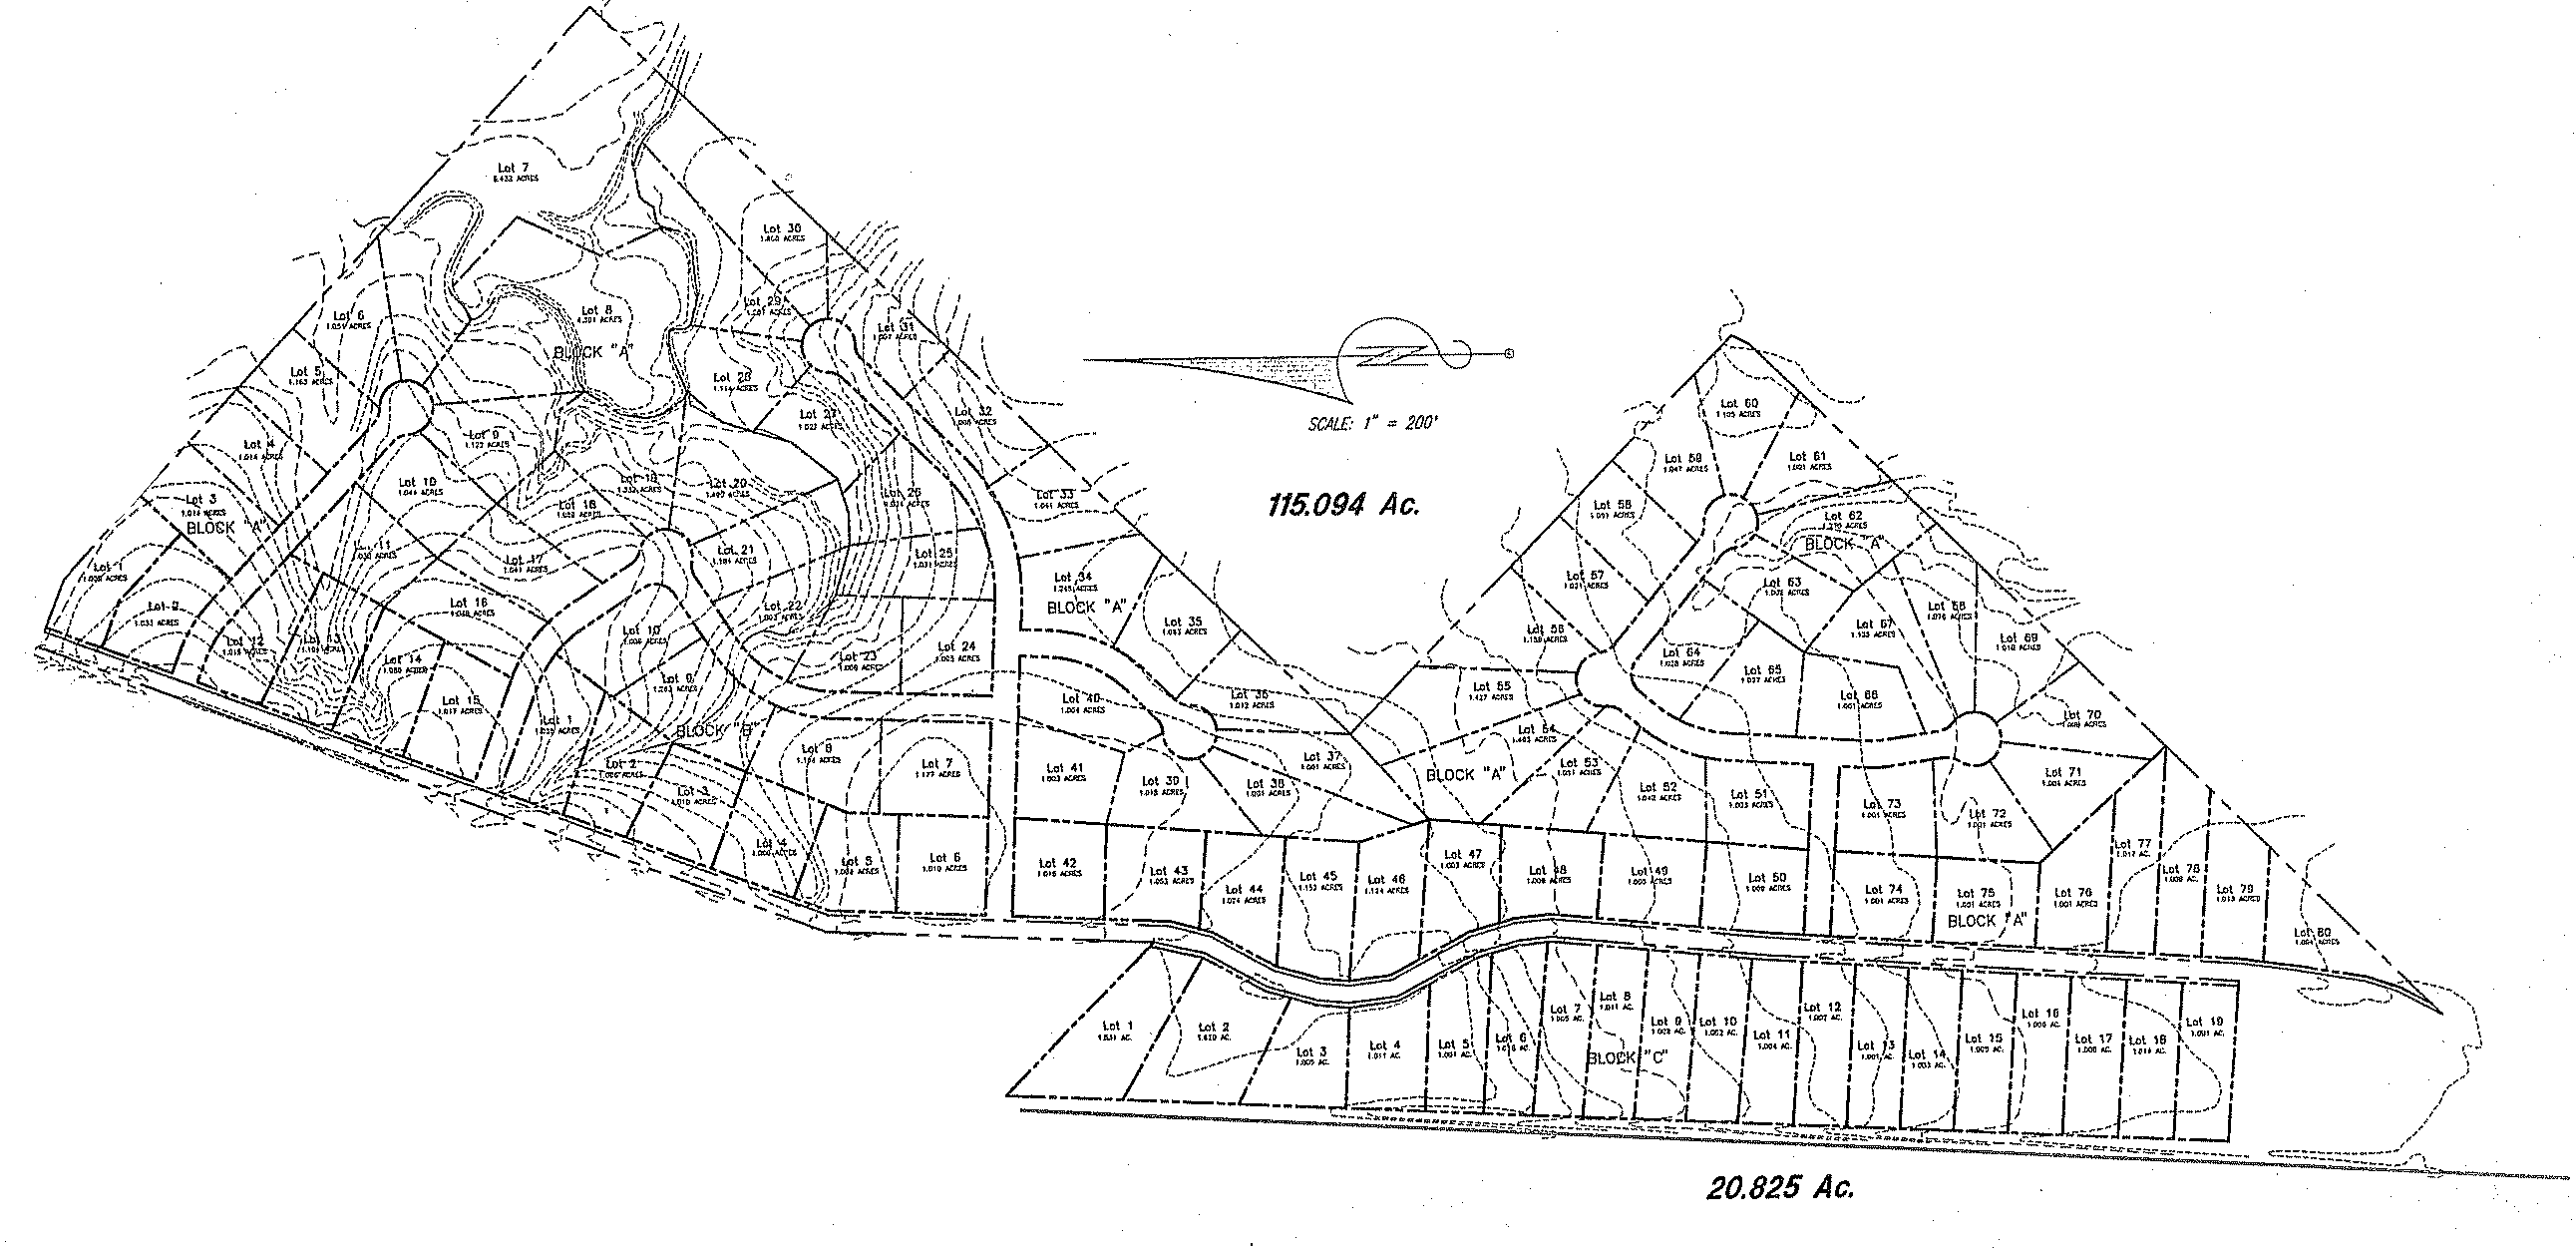 WoodRun Site Plan